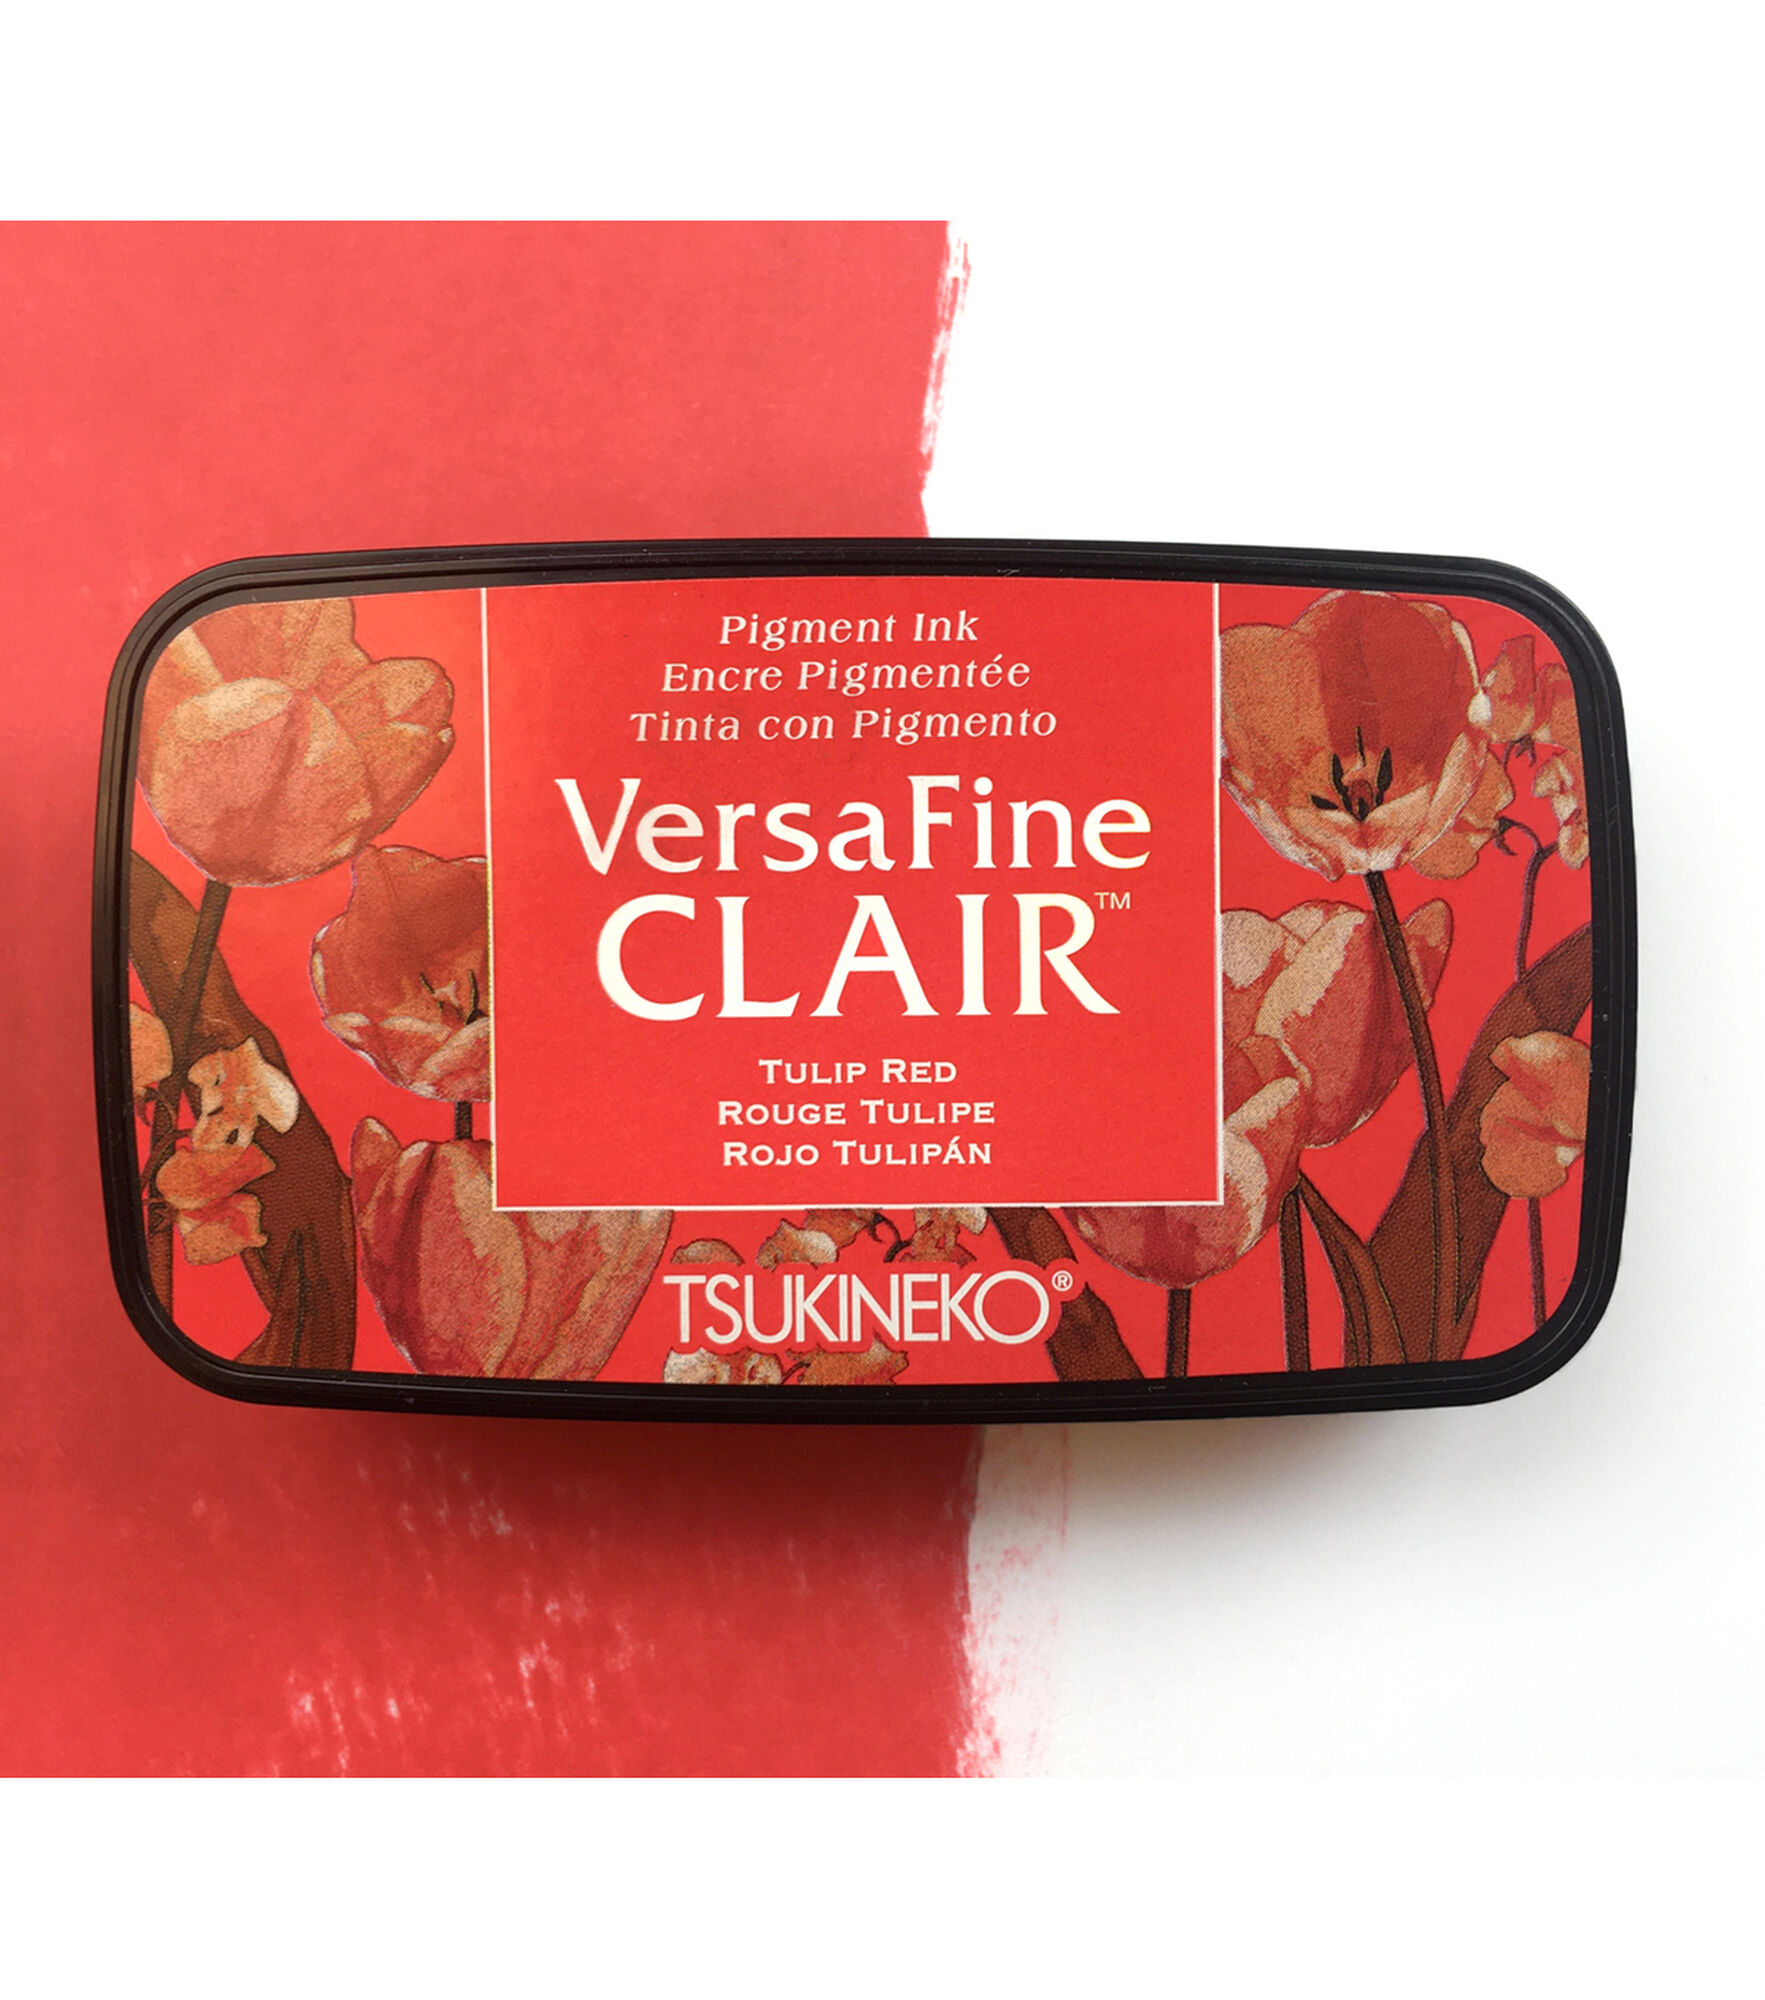 VersaFine Clair Pigment Ink, Tulip Red, hi-res